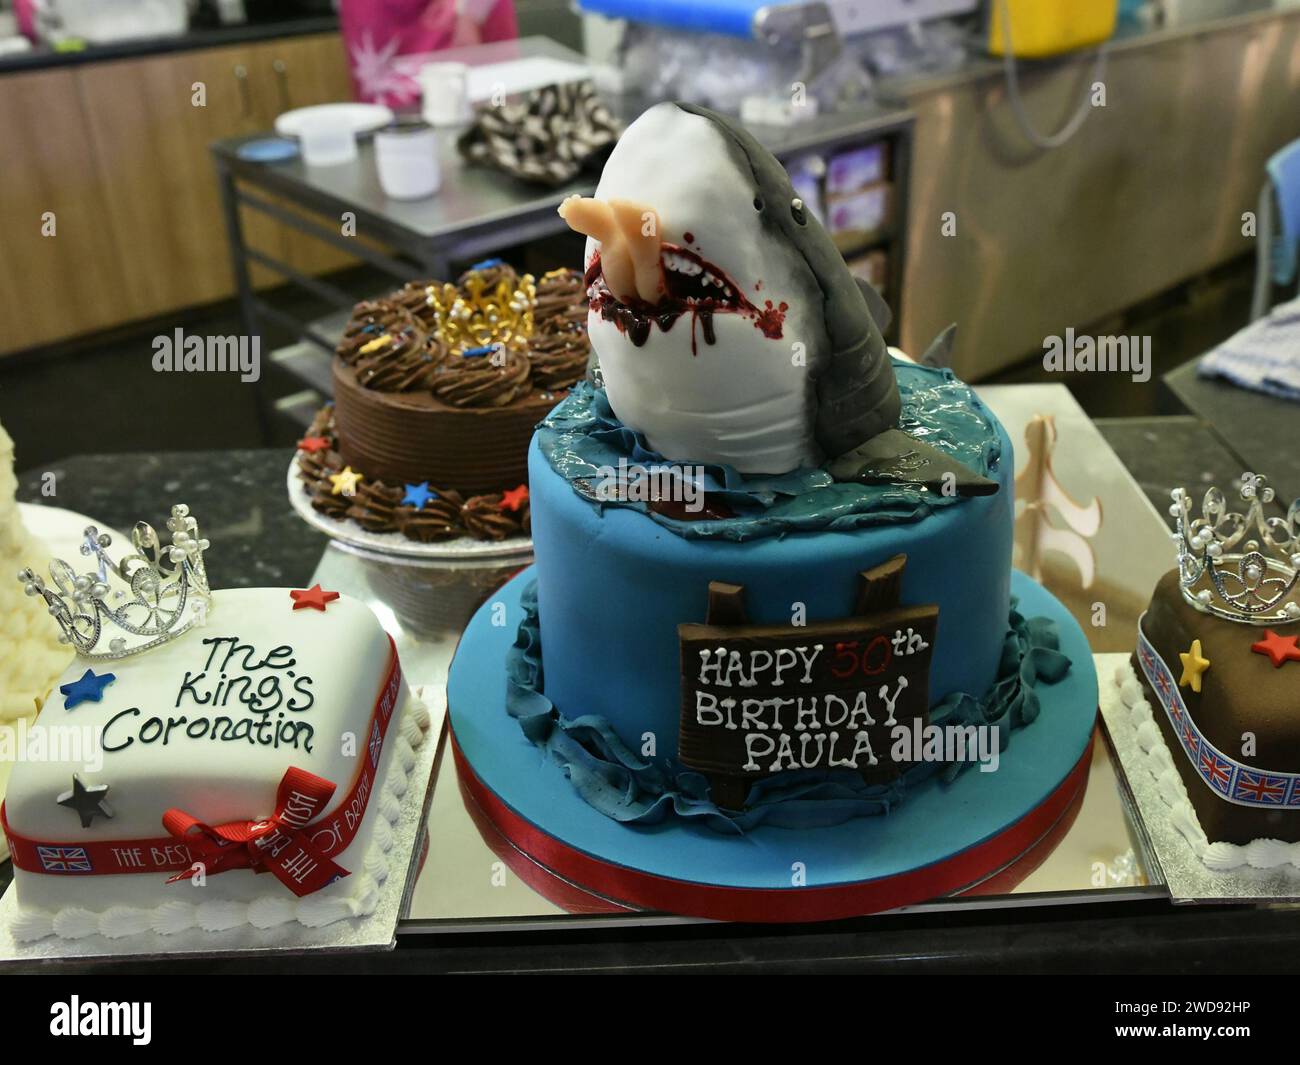 Geburtstagskuchen - basierend auf dem Thema „Jaws“ - in einem Geschäft in Oxford Covered Market (Oxford, England) Stockfoto